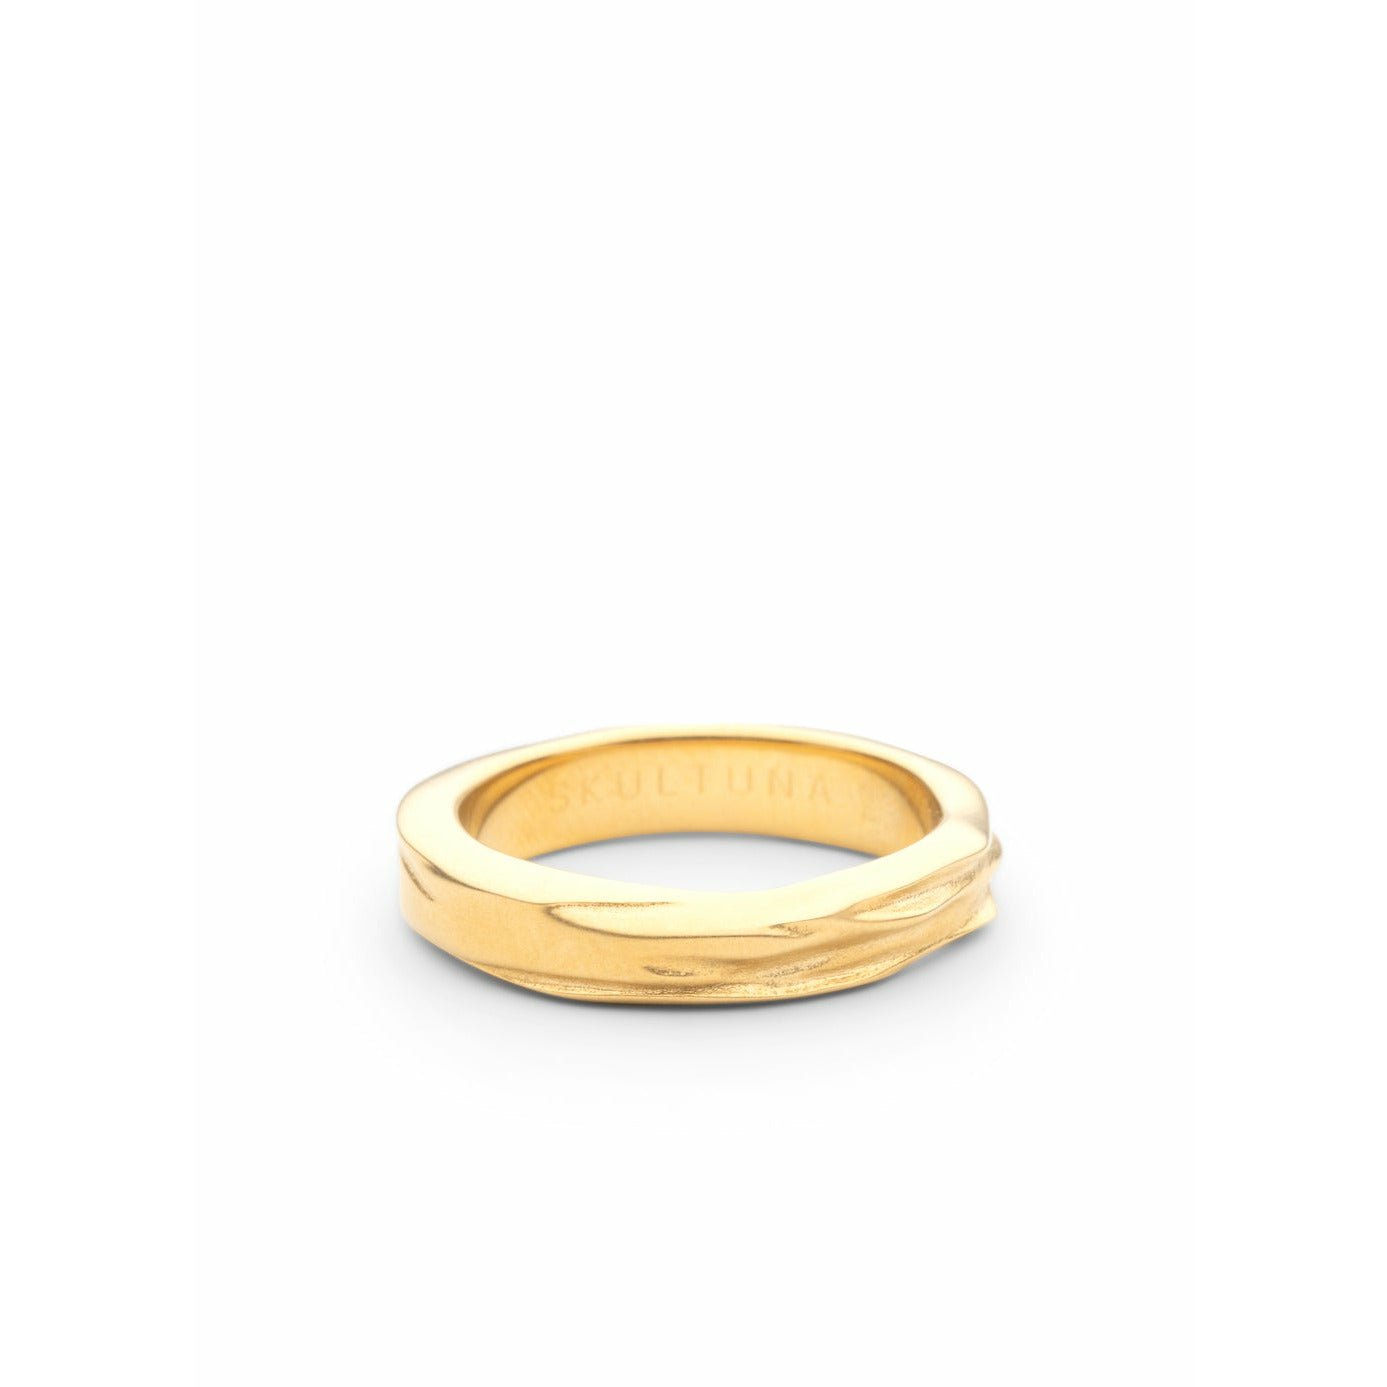 Skultuna Opaque -objekter ringer lite matt gull, ø1,6 cm